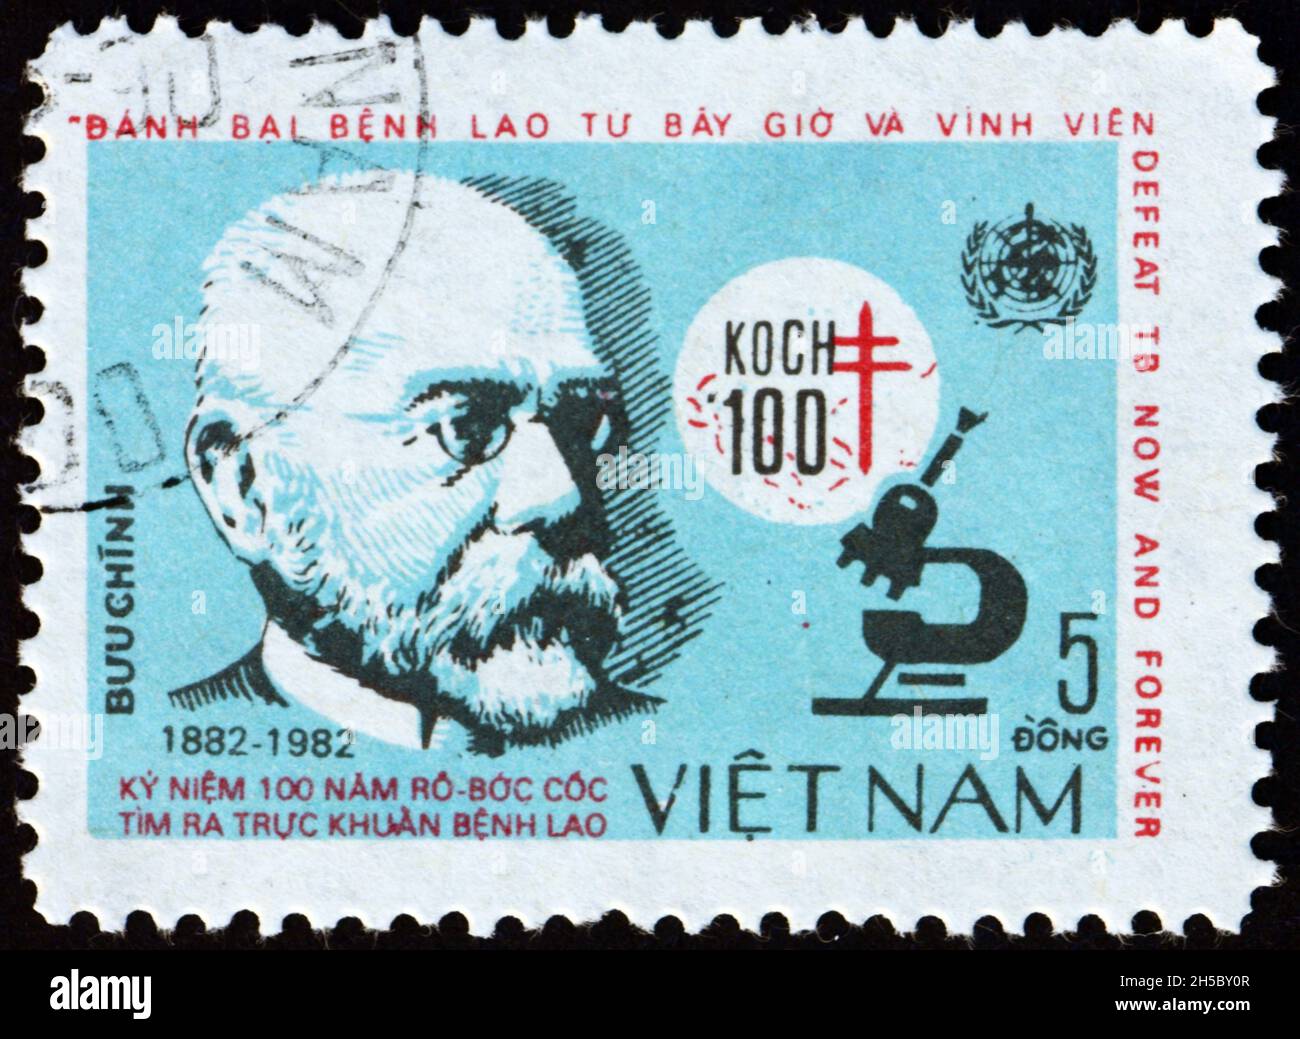 VIETNAM - VERS 1983: Un timbre imprimé au Vietnam montre Robert Koch, était un médecin et microbiologiste allemand, découverte de bacille de tubercule, centena Banque D'Images